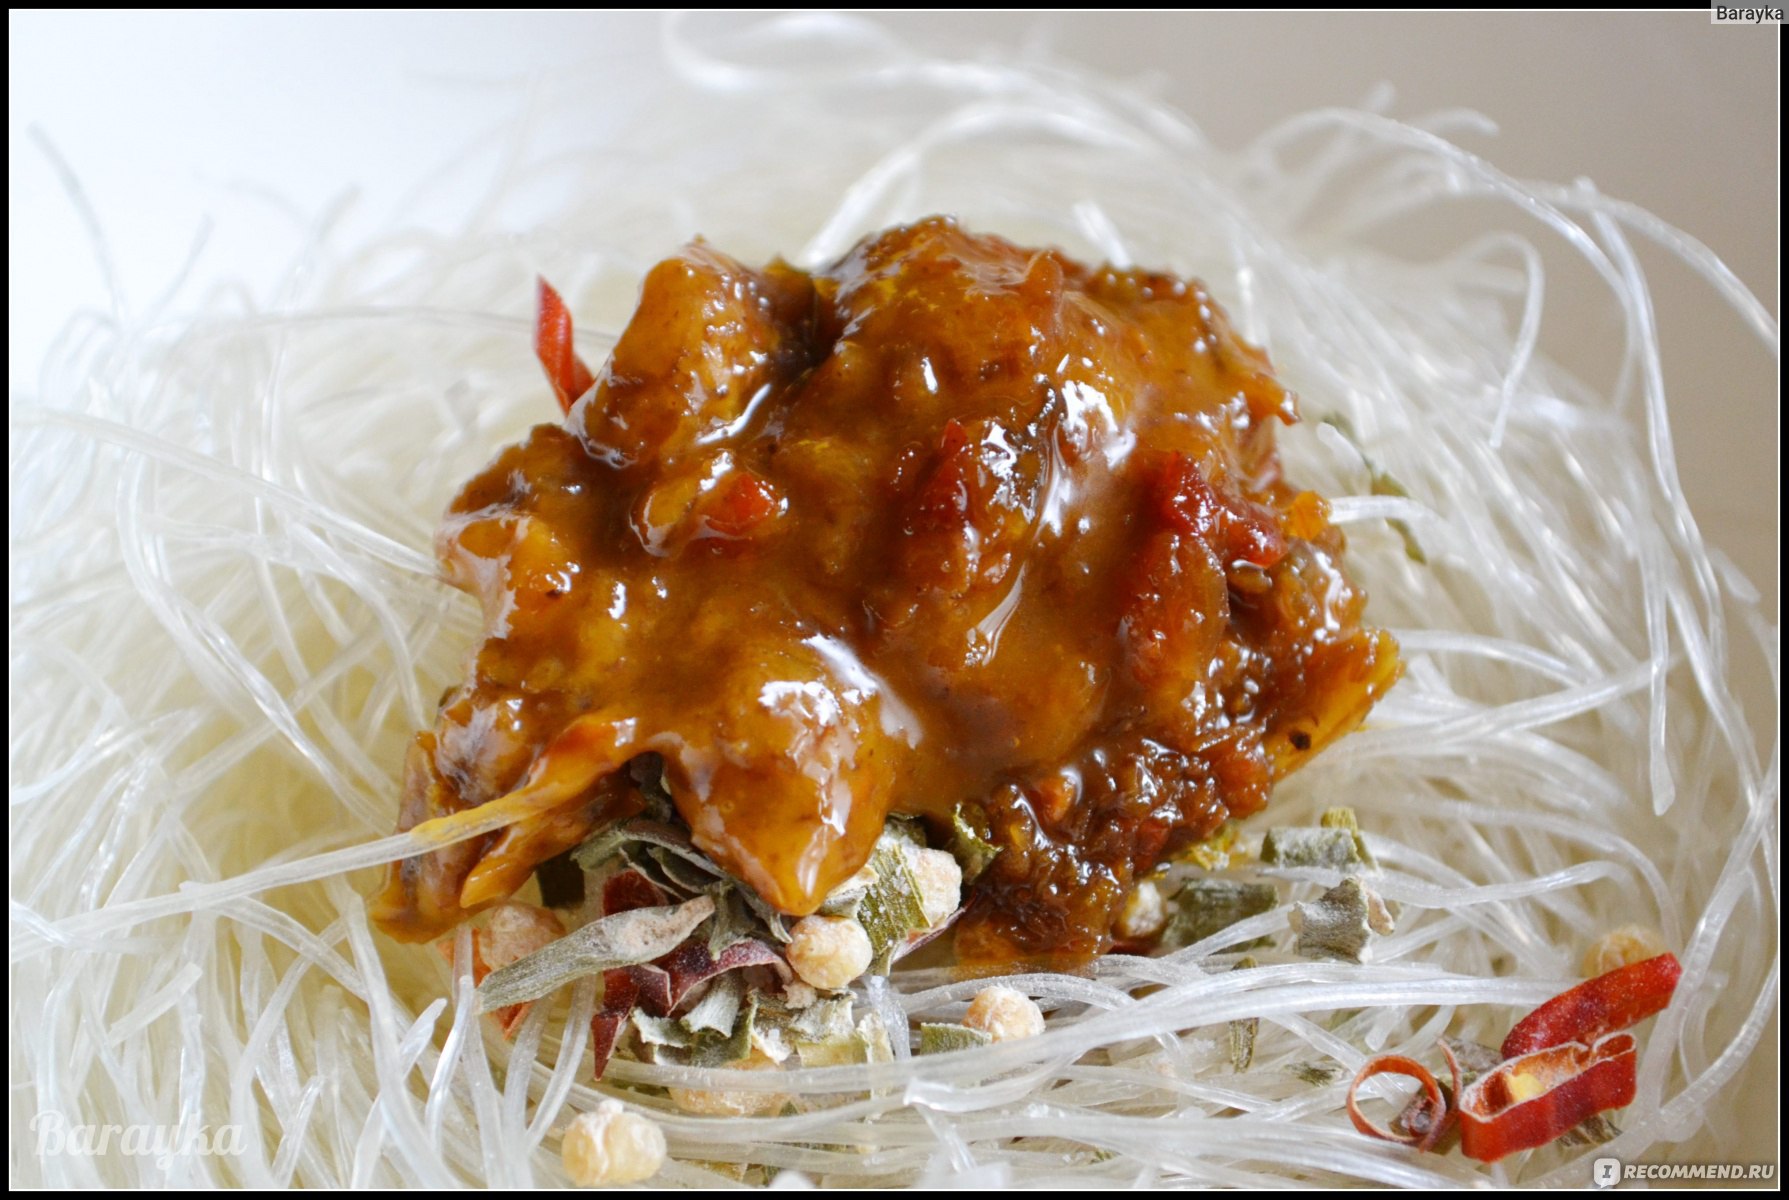 Лапша быстрого приготовления Baijia рисовая с квашеной капустой и рыбой Chenji, 110 г фото